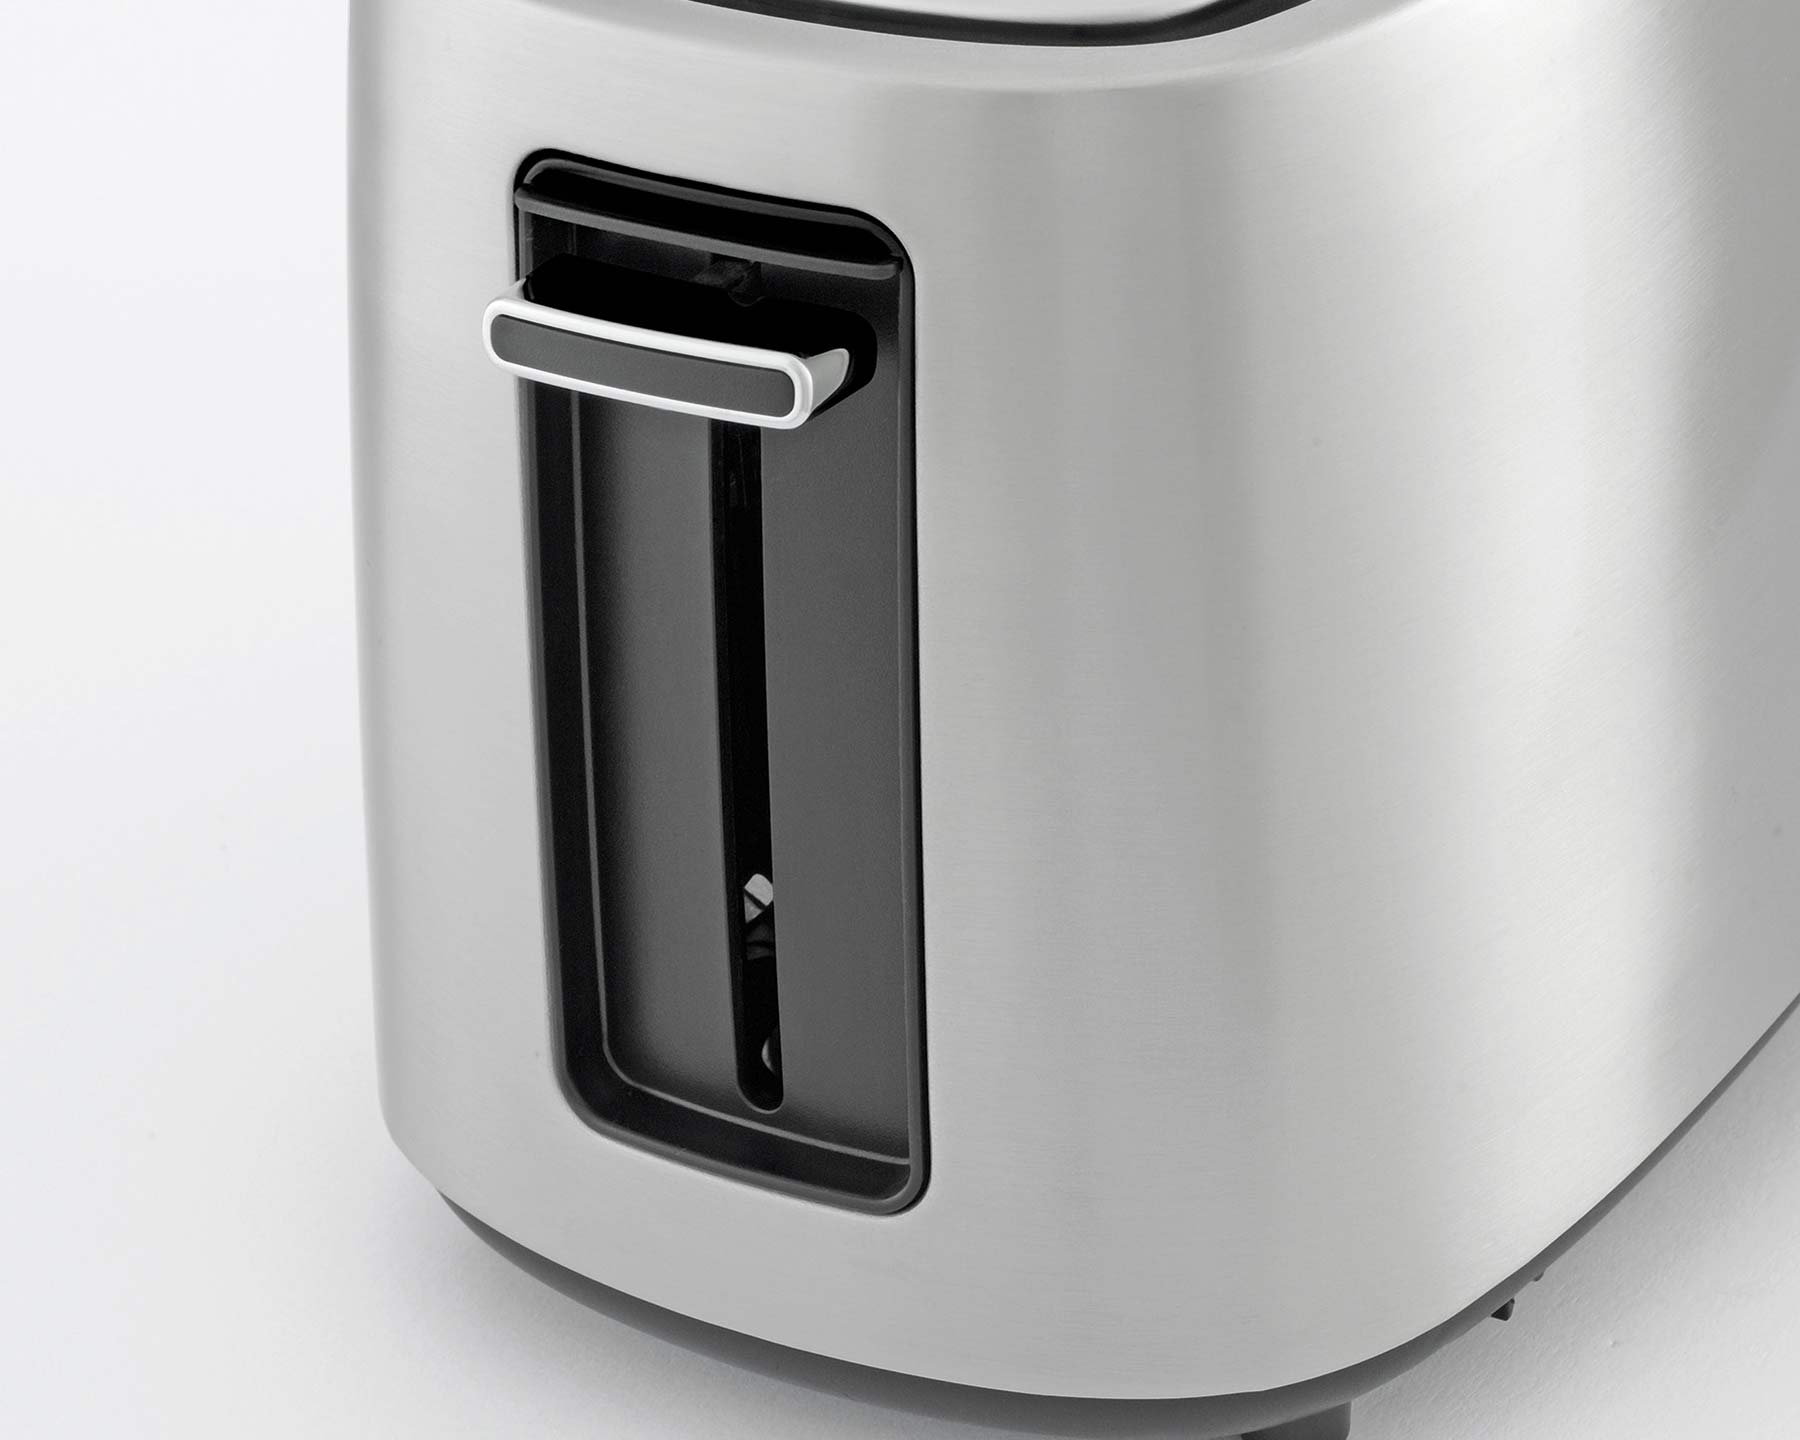 KOENIG Toaster Steel Line - kitchen-more.ch, kostenloser Versand in der ganzen Schweiz